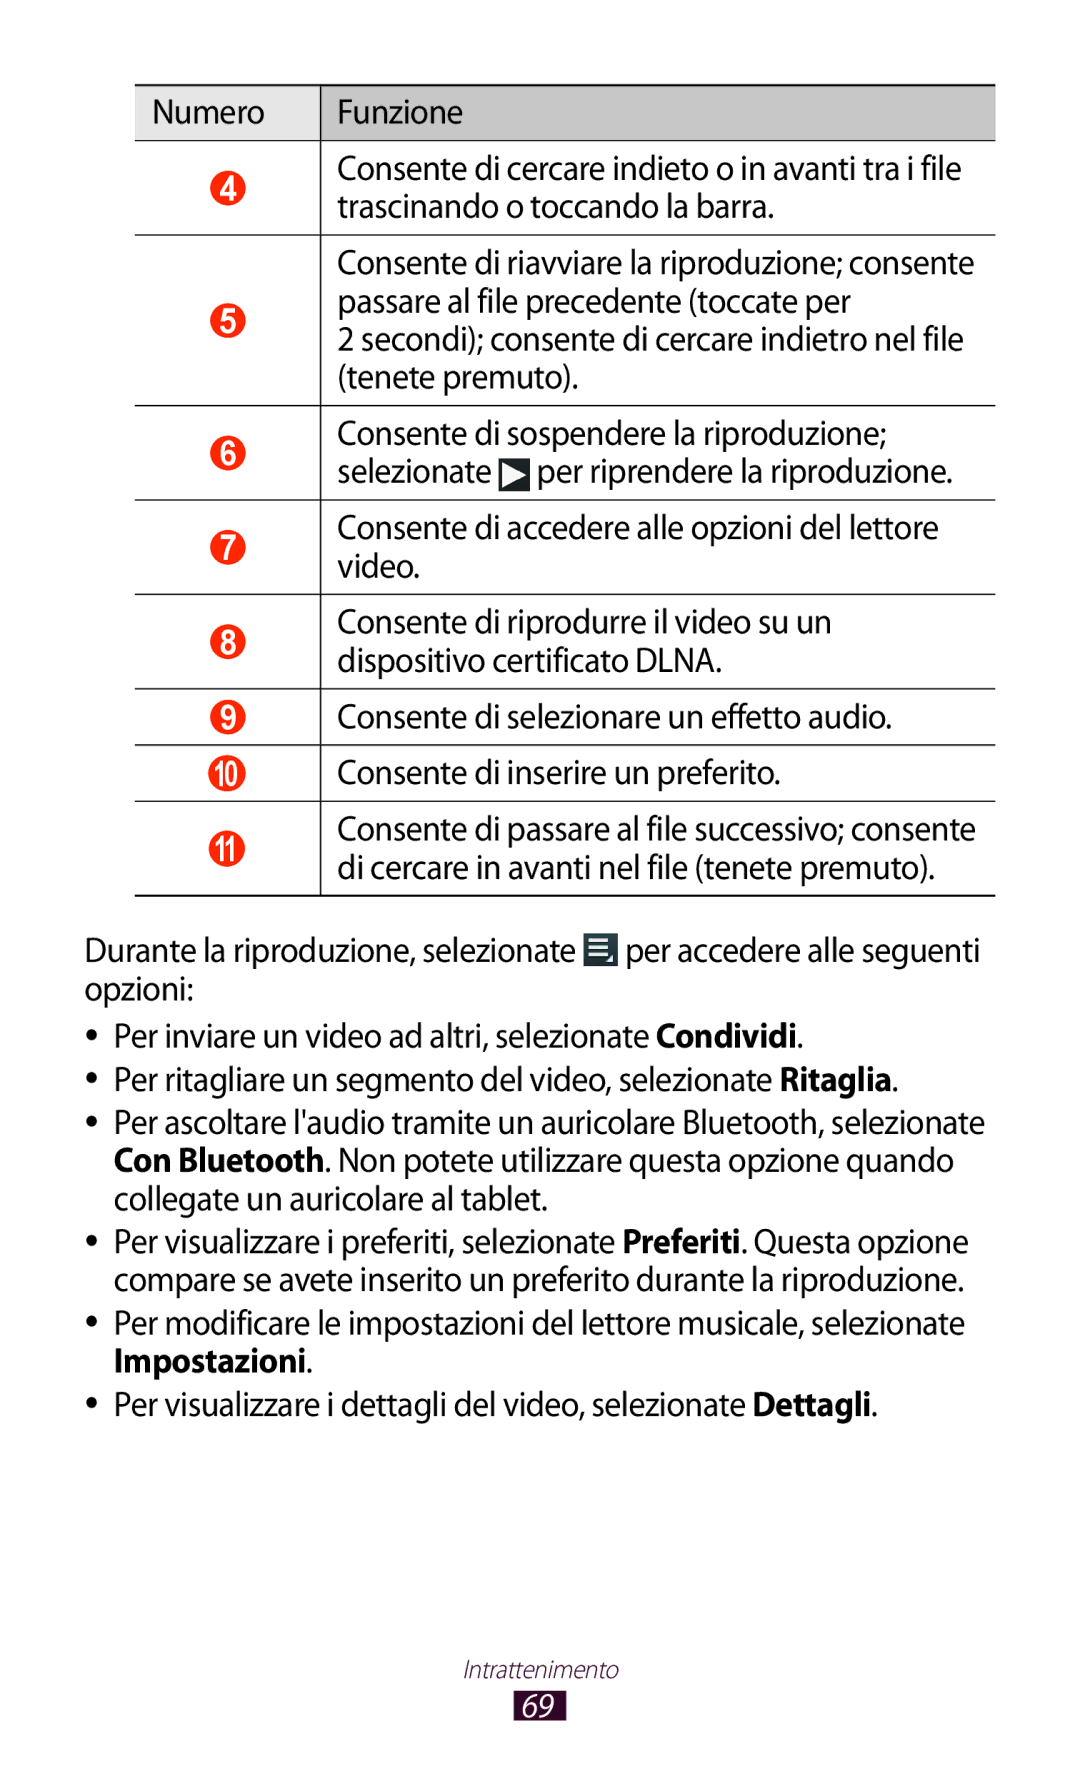 Samsung GT-P7500UWDFWB manual Consente di accedere alle opzioni del lettore video, Consente di selezionare un effetto audio 